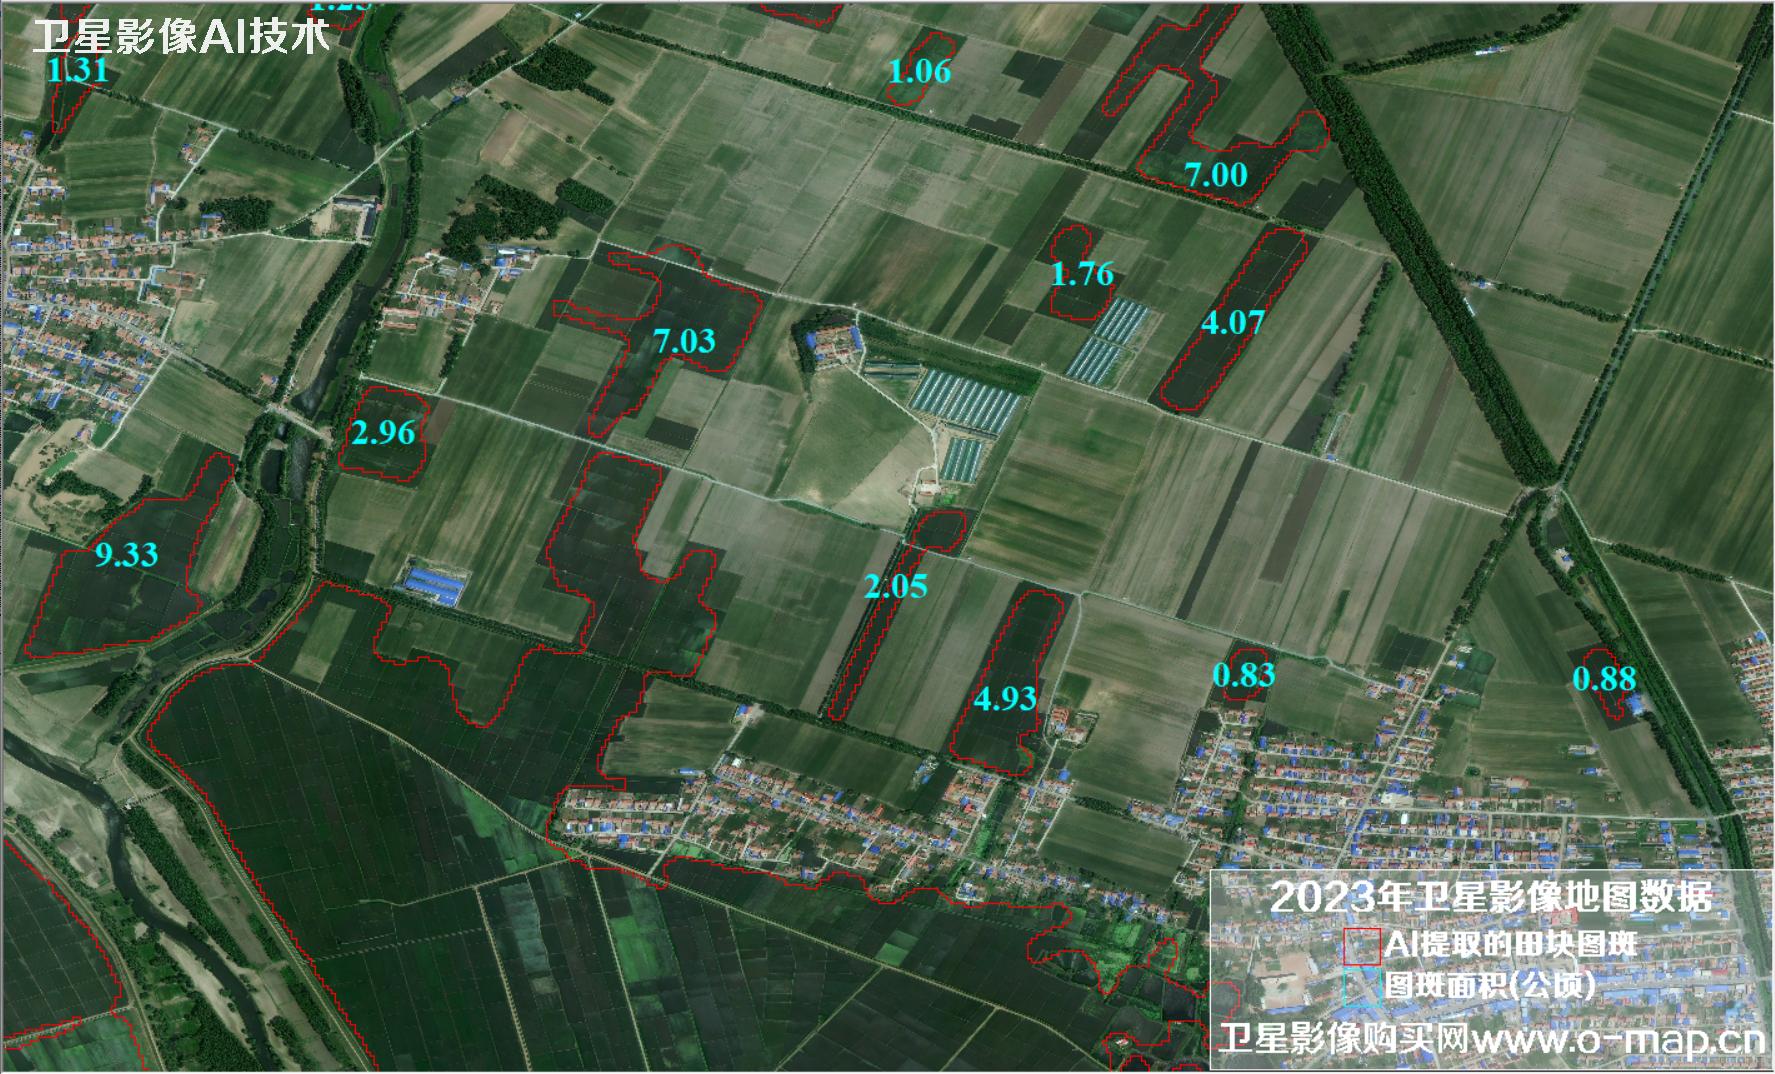 AI基于卫星影像提取水田地块分布图斑以及面积统计